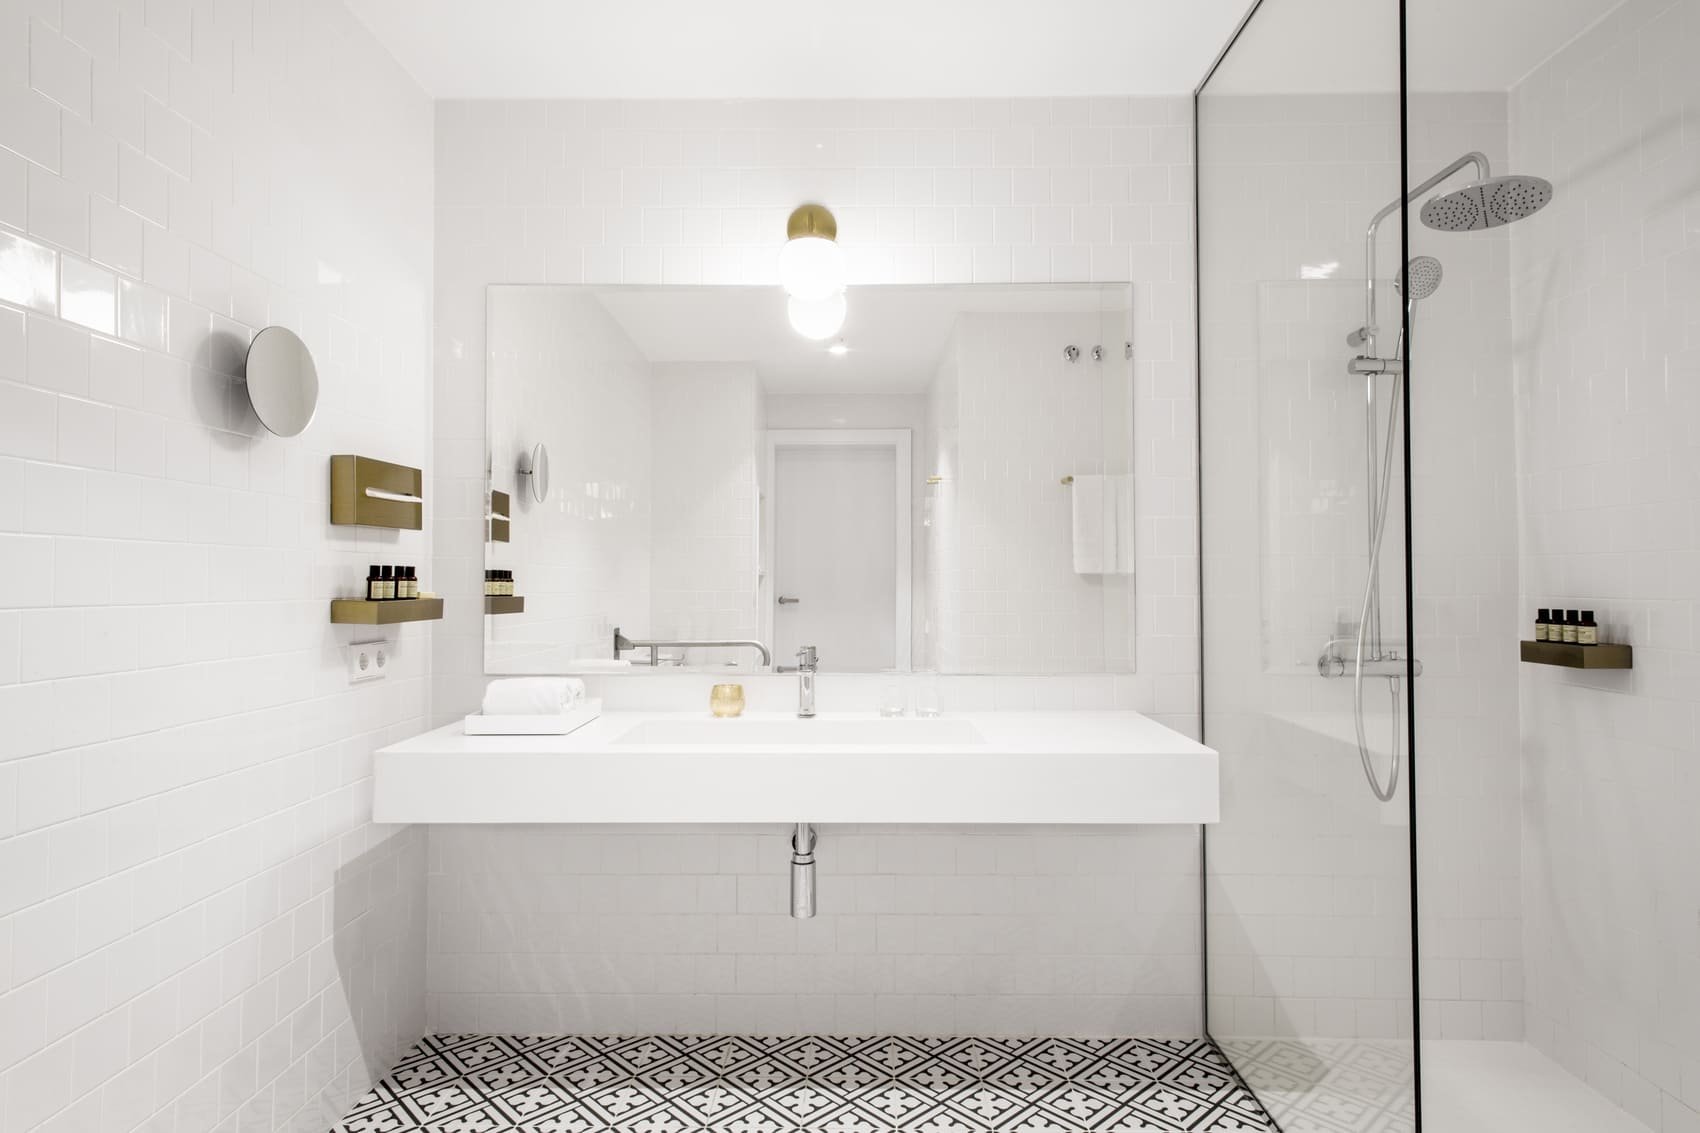 Midmost Hotel - boutique hôtel design - Espagne Barcelone -salle de bain